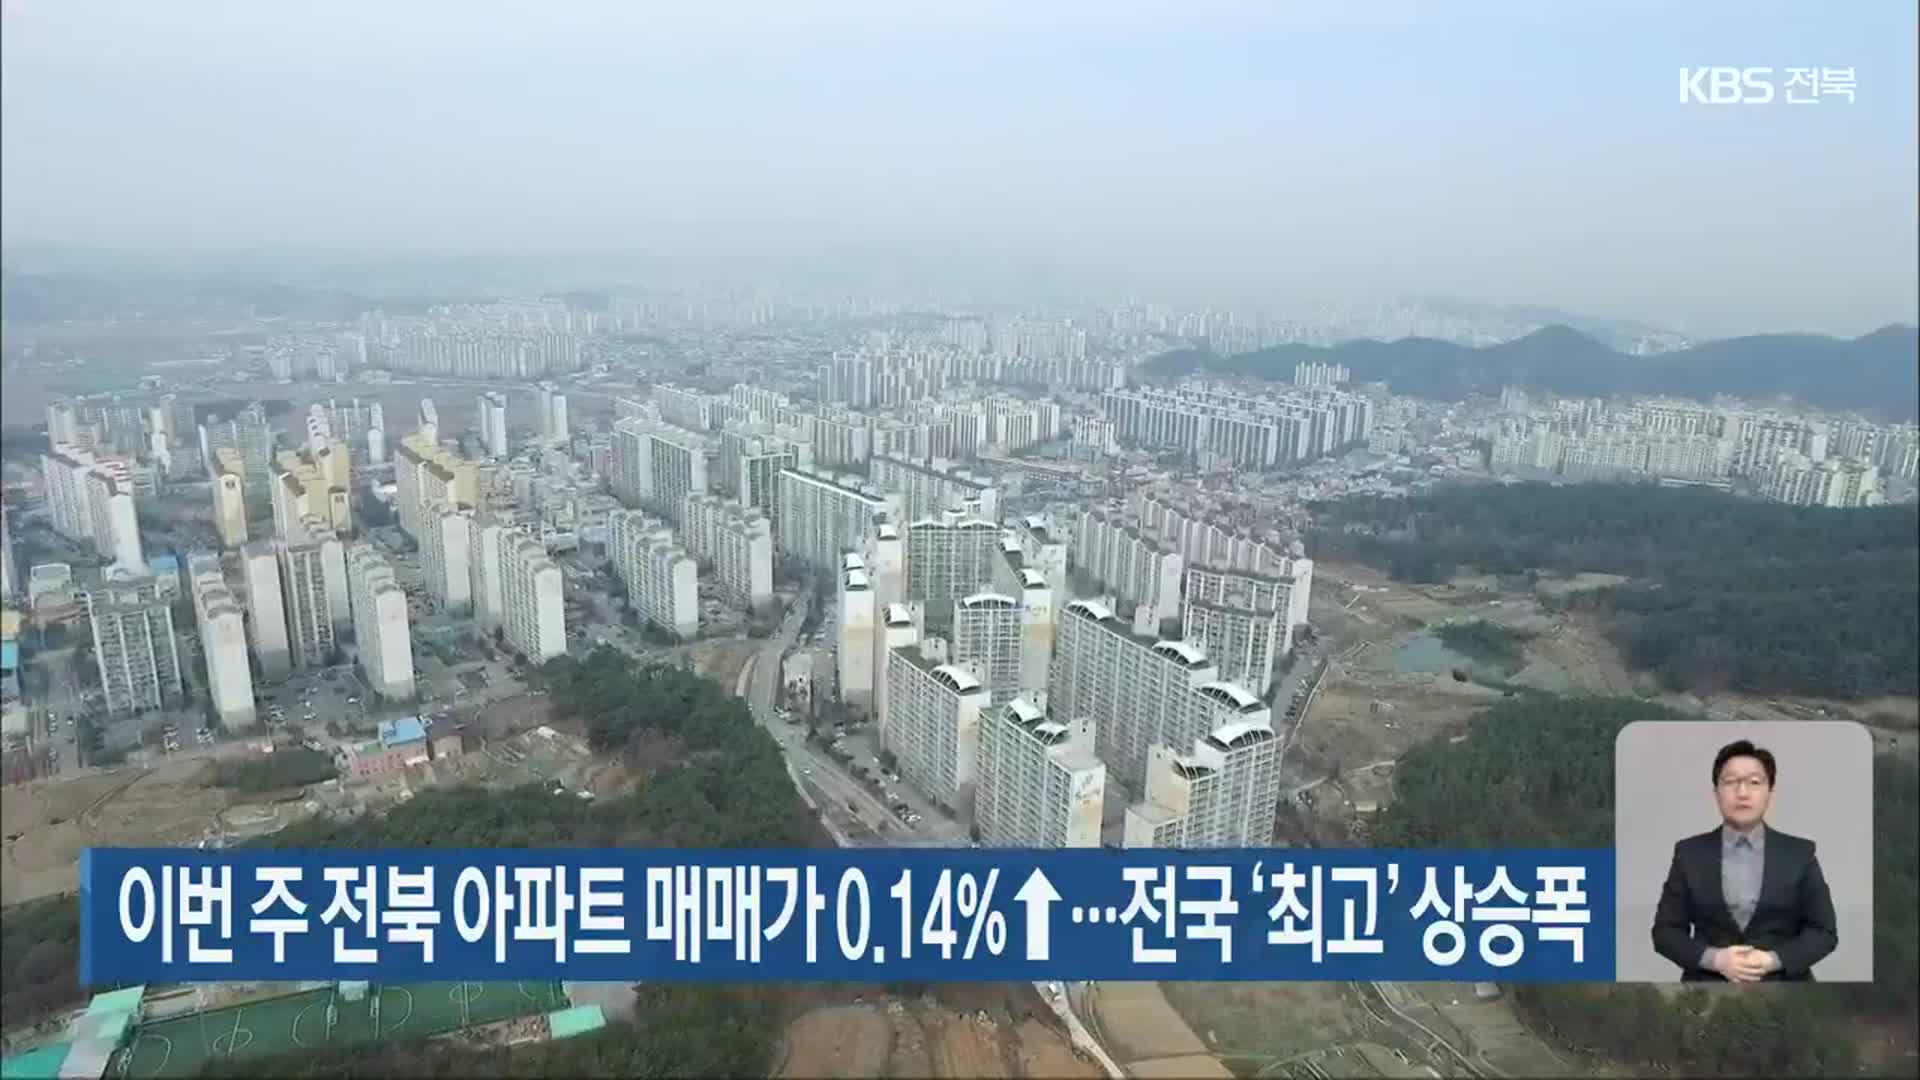 이번 주 전북 아파트 매매가 0.14%↑…전국 ‘최고’ 상승폭